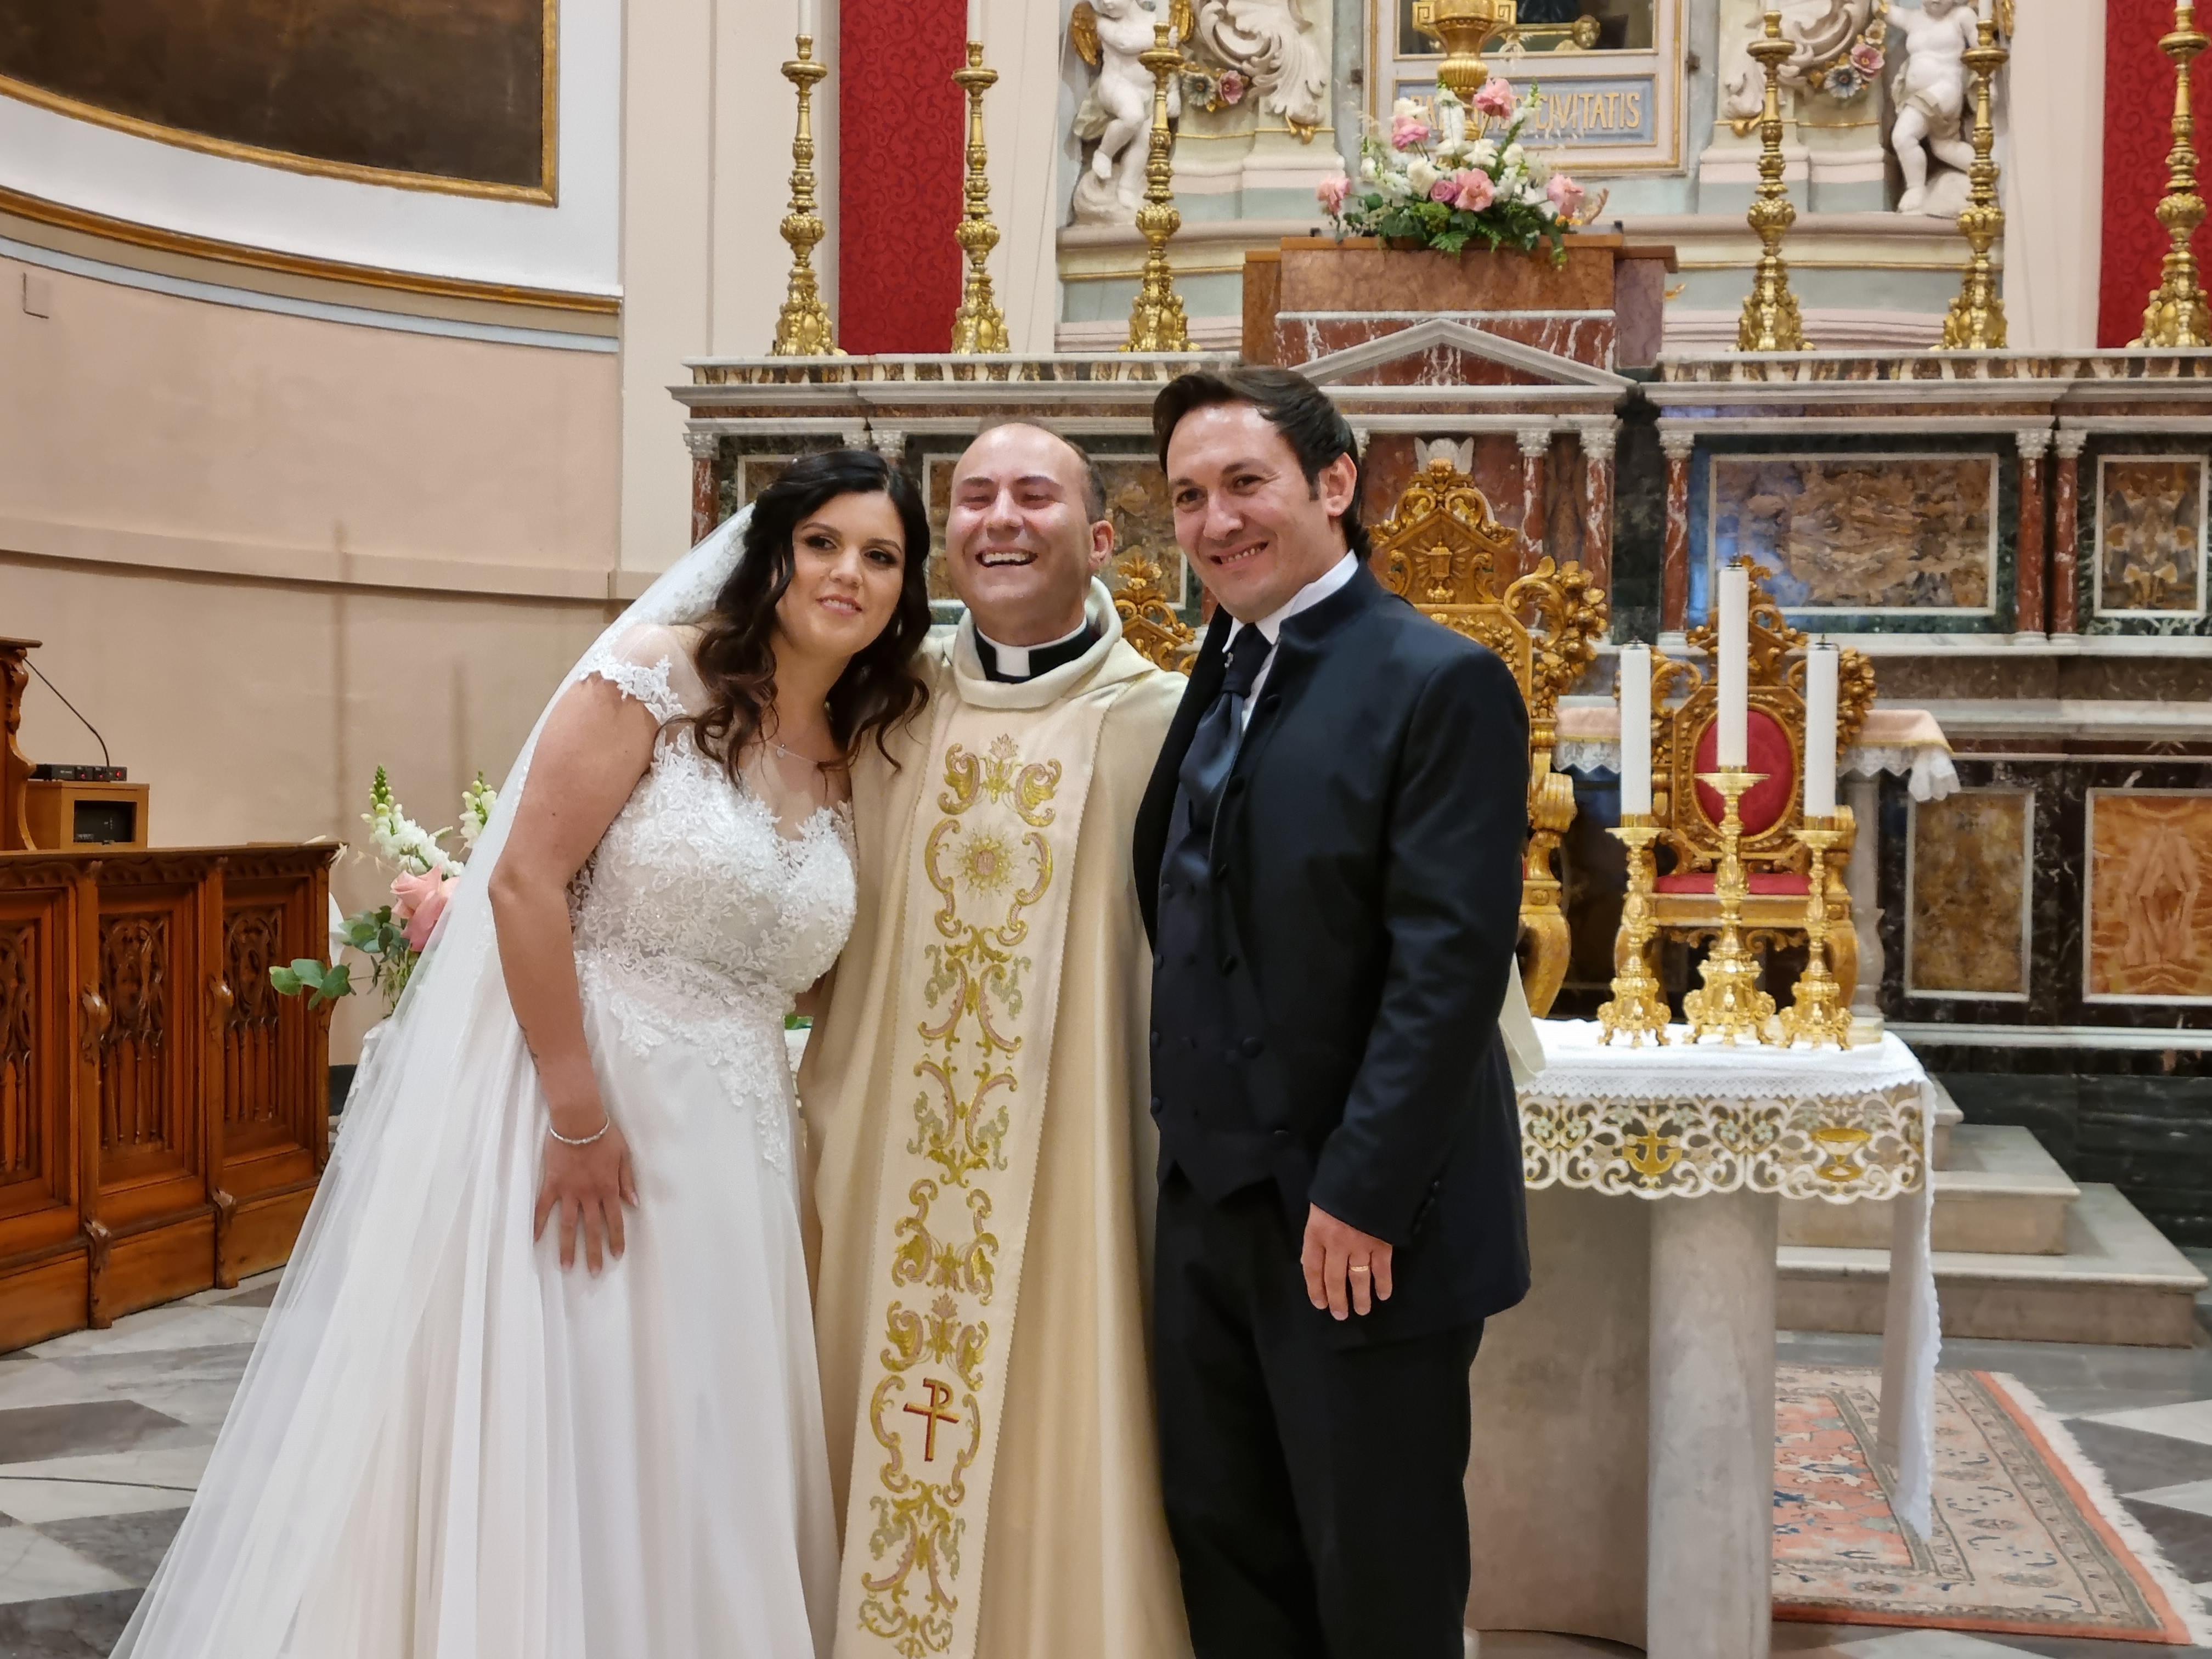 Consigliere di Rosolini festeggia 40esimo compleanno e nozze